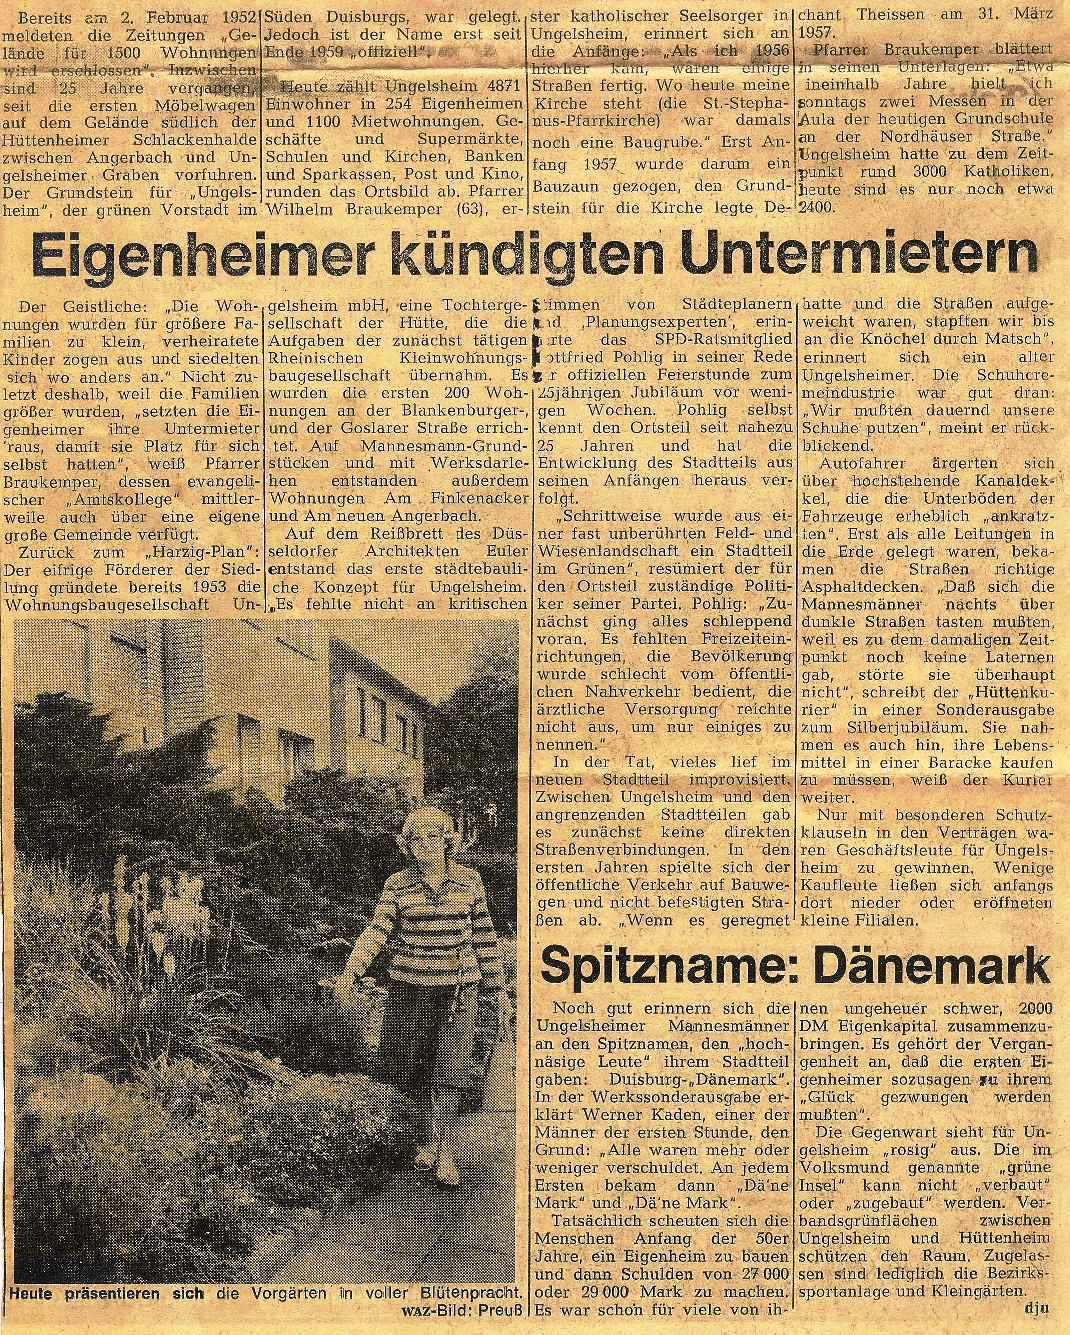 1978 09 23 25 jahre ungelsheim2